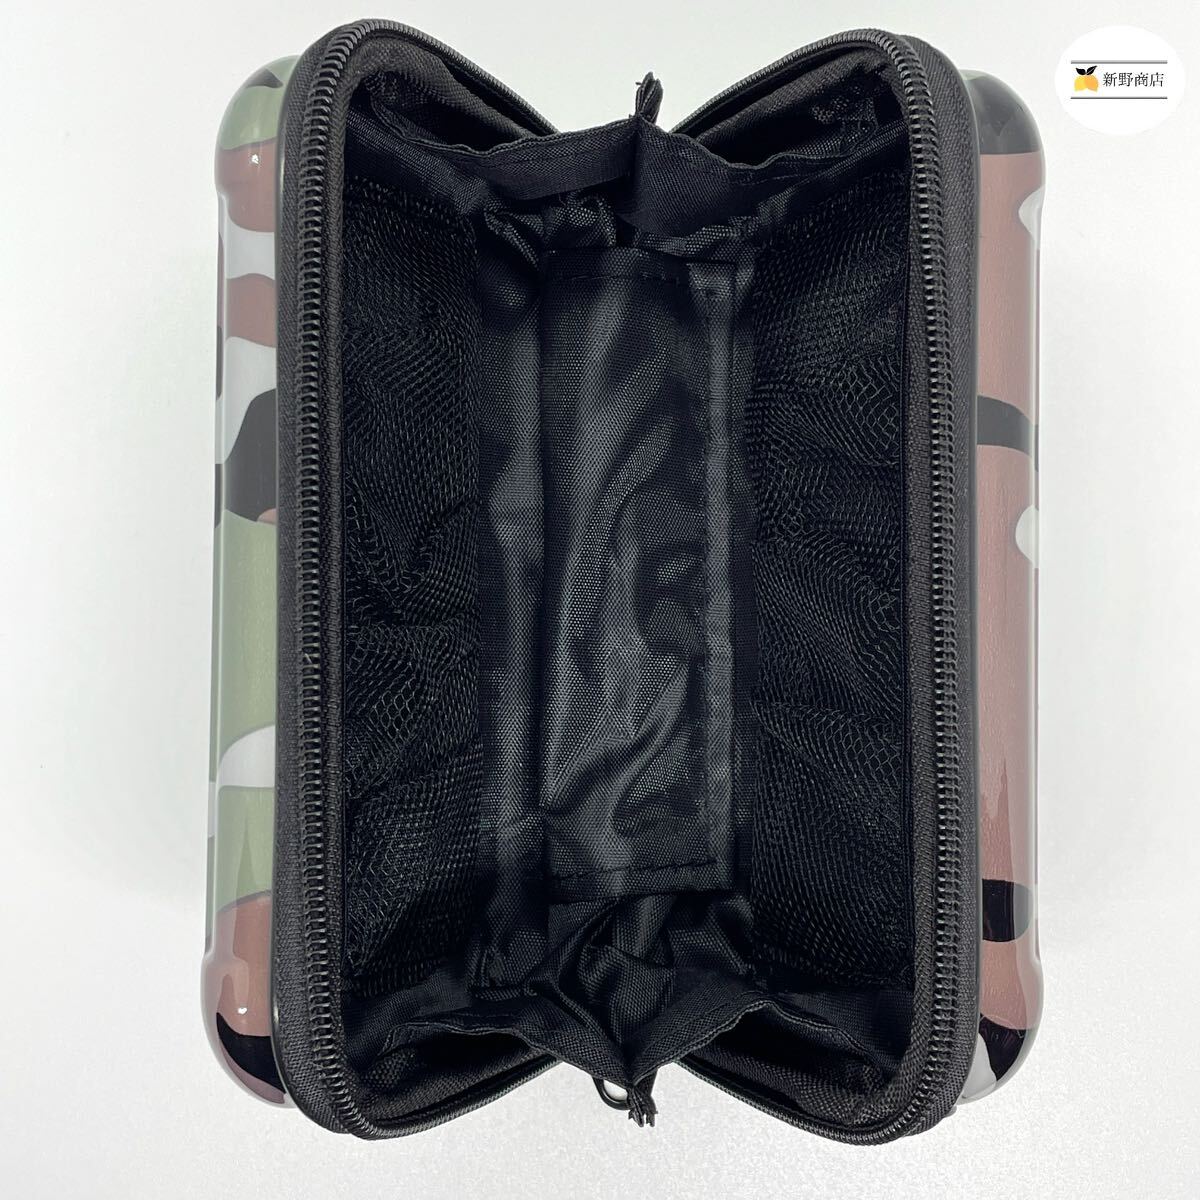 【新品未使用】スーツケース キャリーケース ミニケース型 ポーチ ハンドバッグ ショルダーバッグ 黒 迷彩